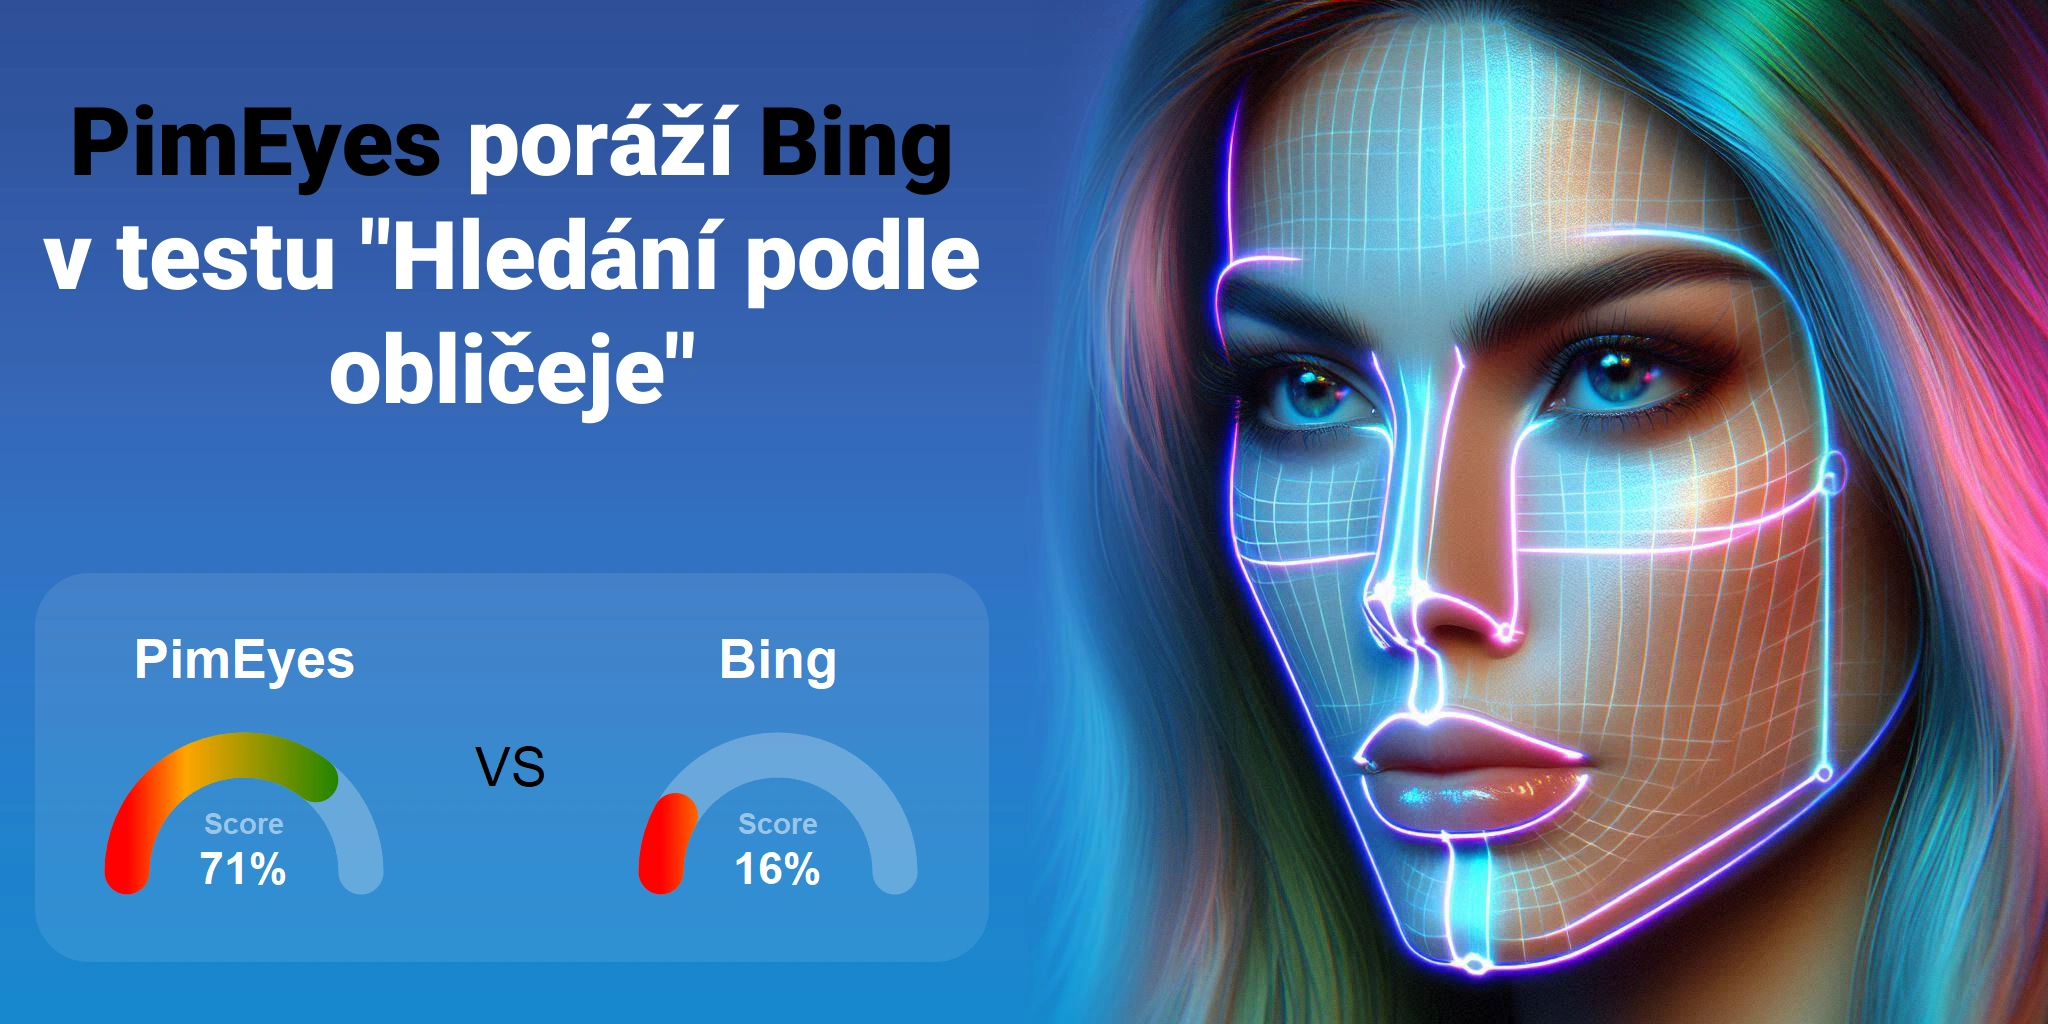 Který je lepší pro vyhledávání obličejů: <br>PimEyes nebo Bing?